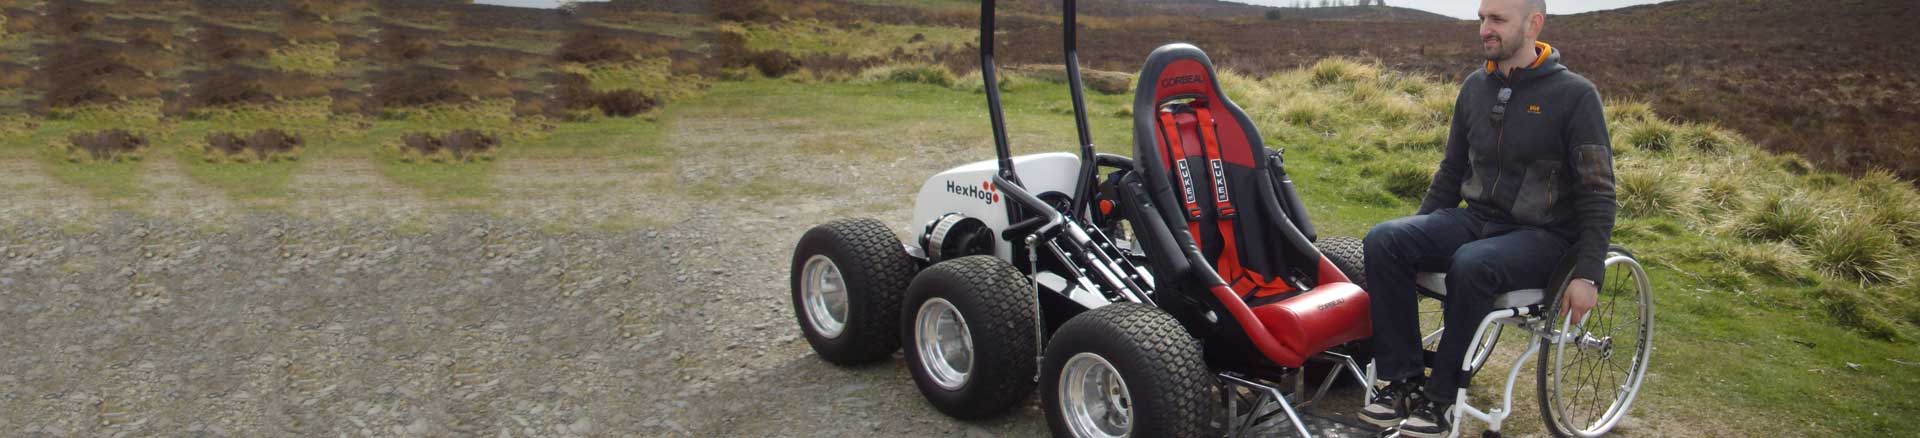 Hexhog All-terrain Wheelchair